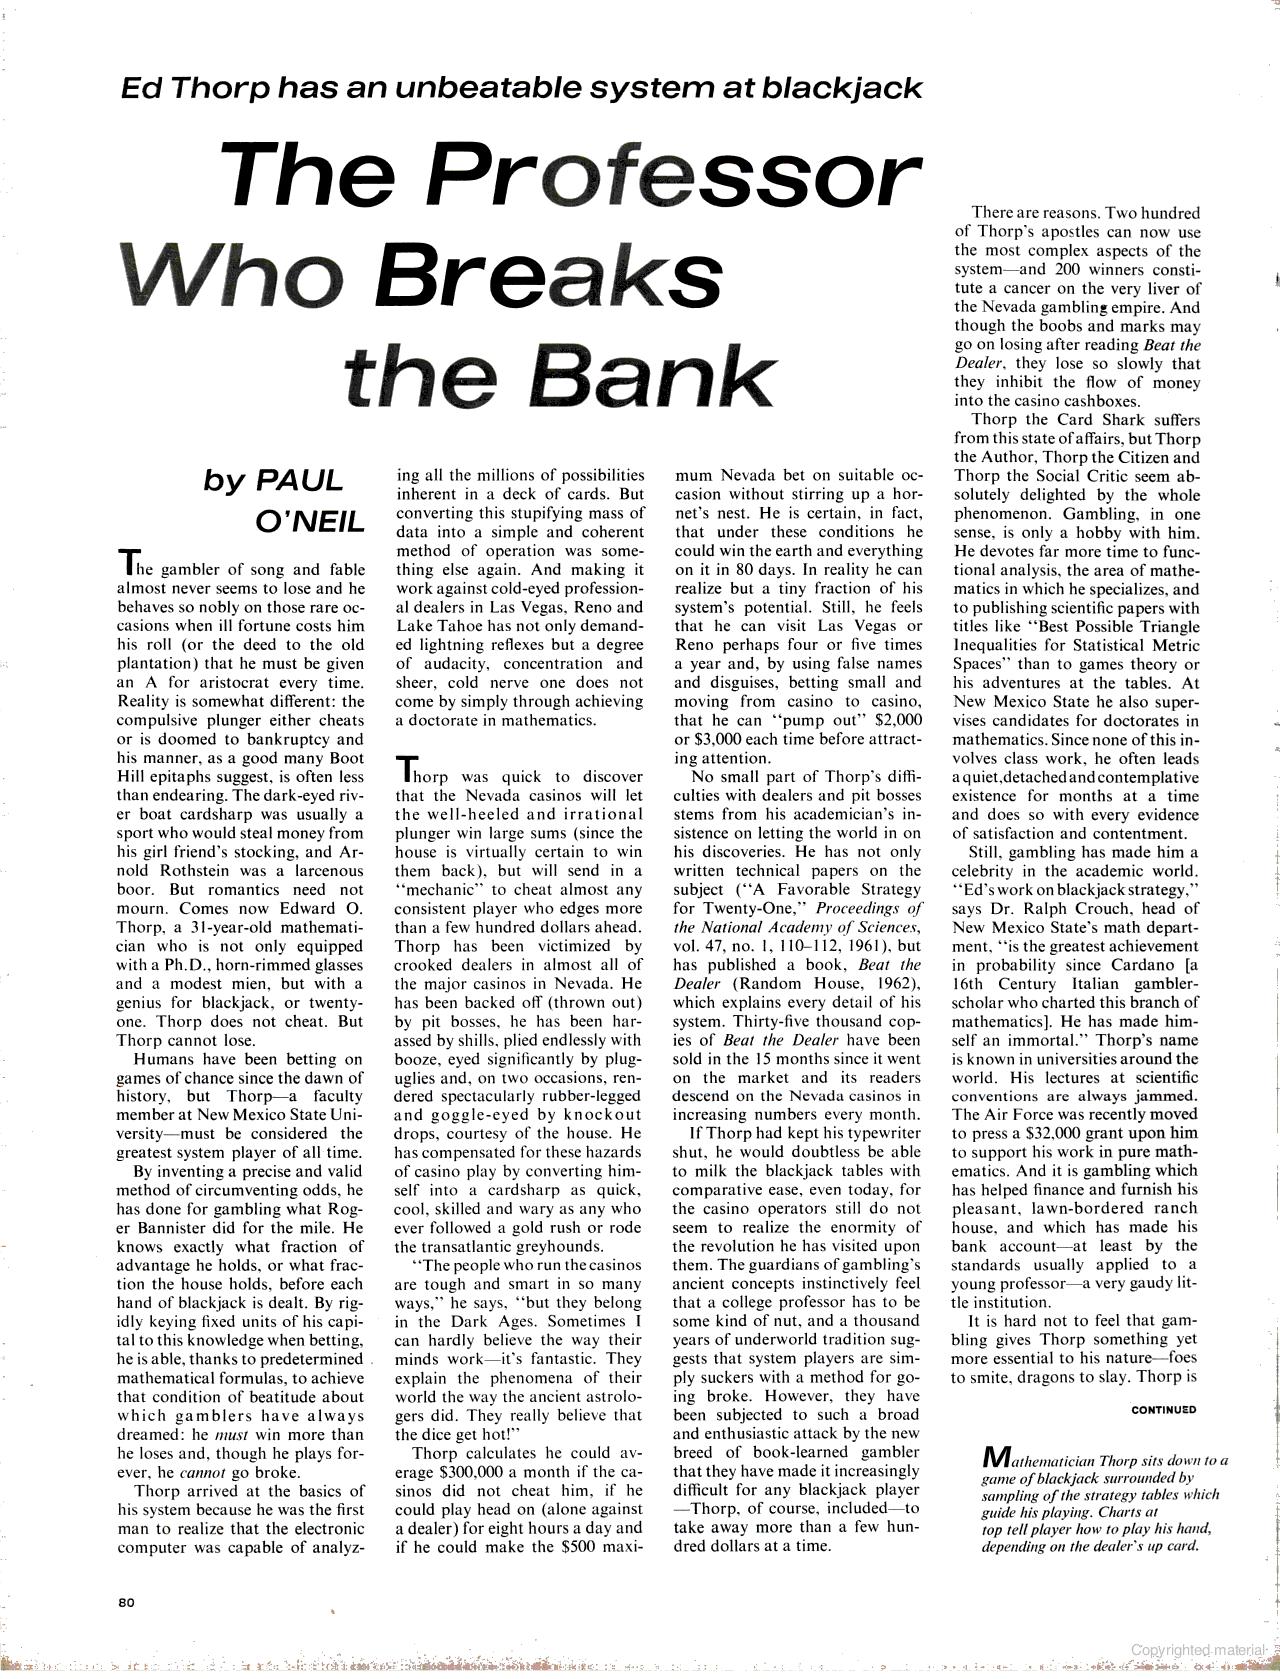 Ed Thorp And Blackjack: Life Magazine 1964 | Mike Cane’s xBlog